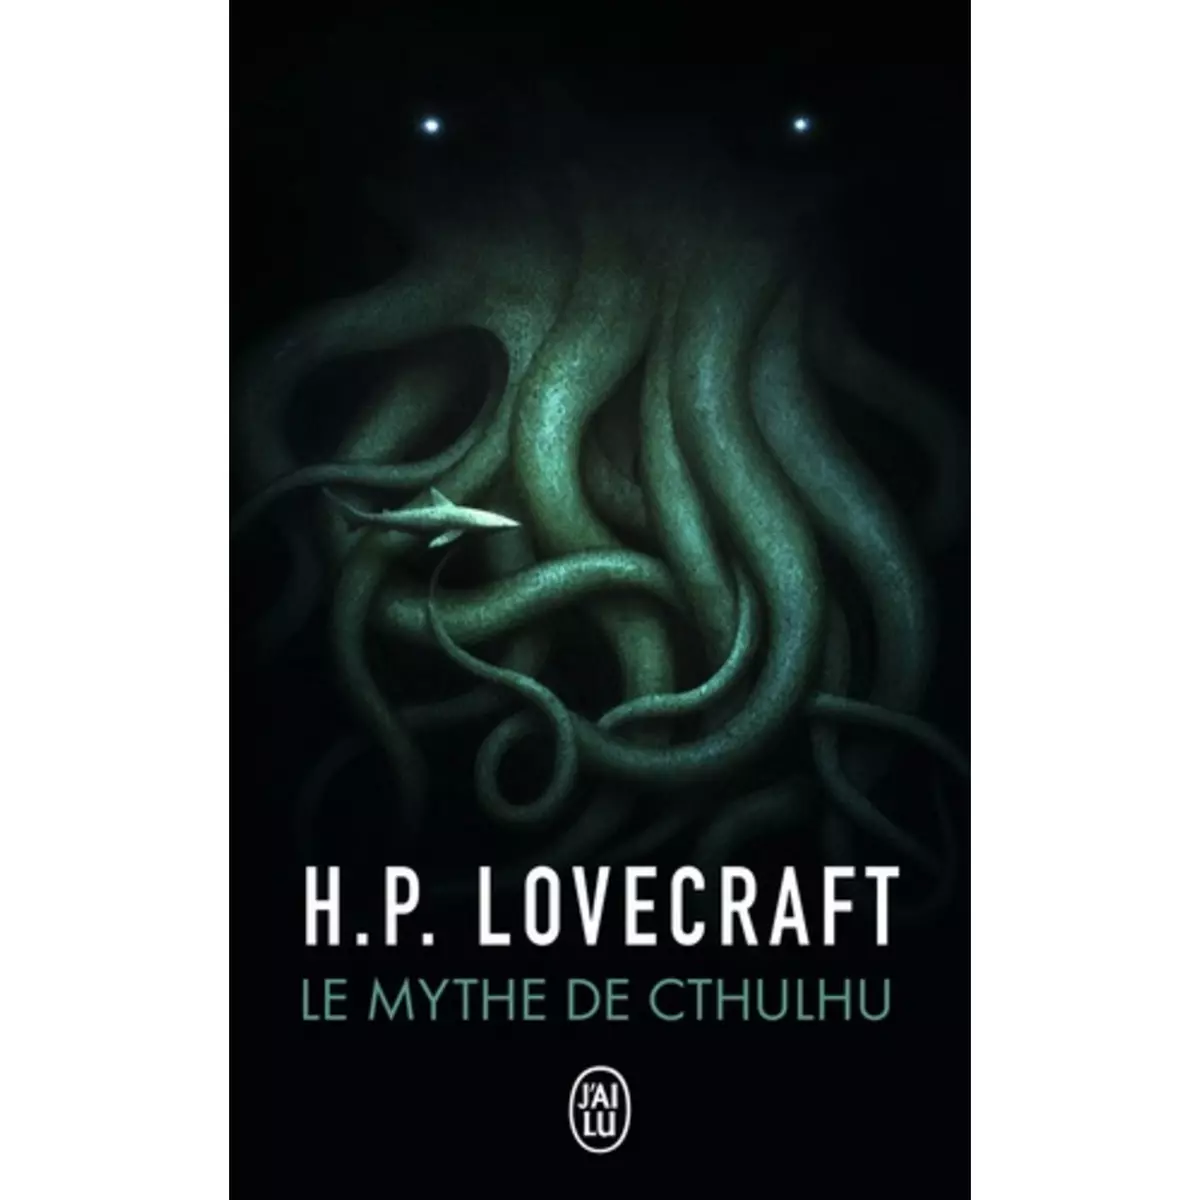  LE MYTHE DE CTHULHU, Lovecraft Howard Phillips